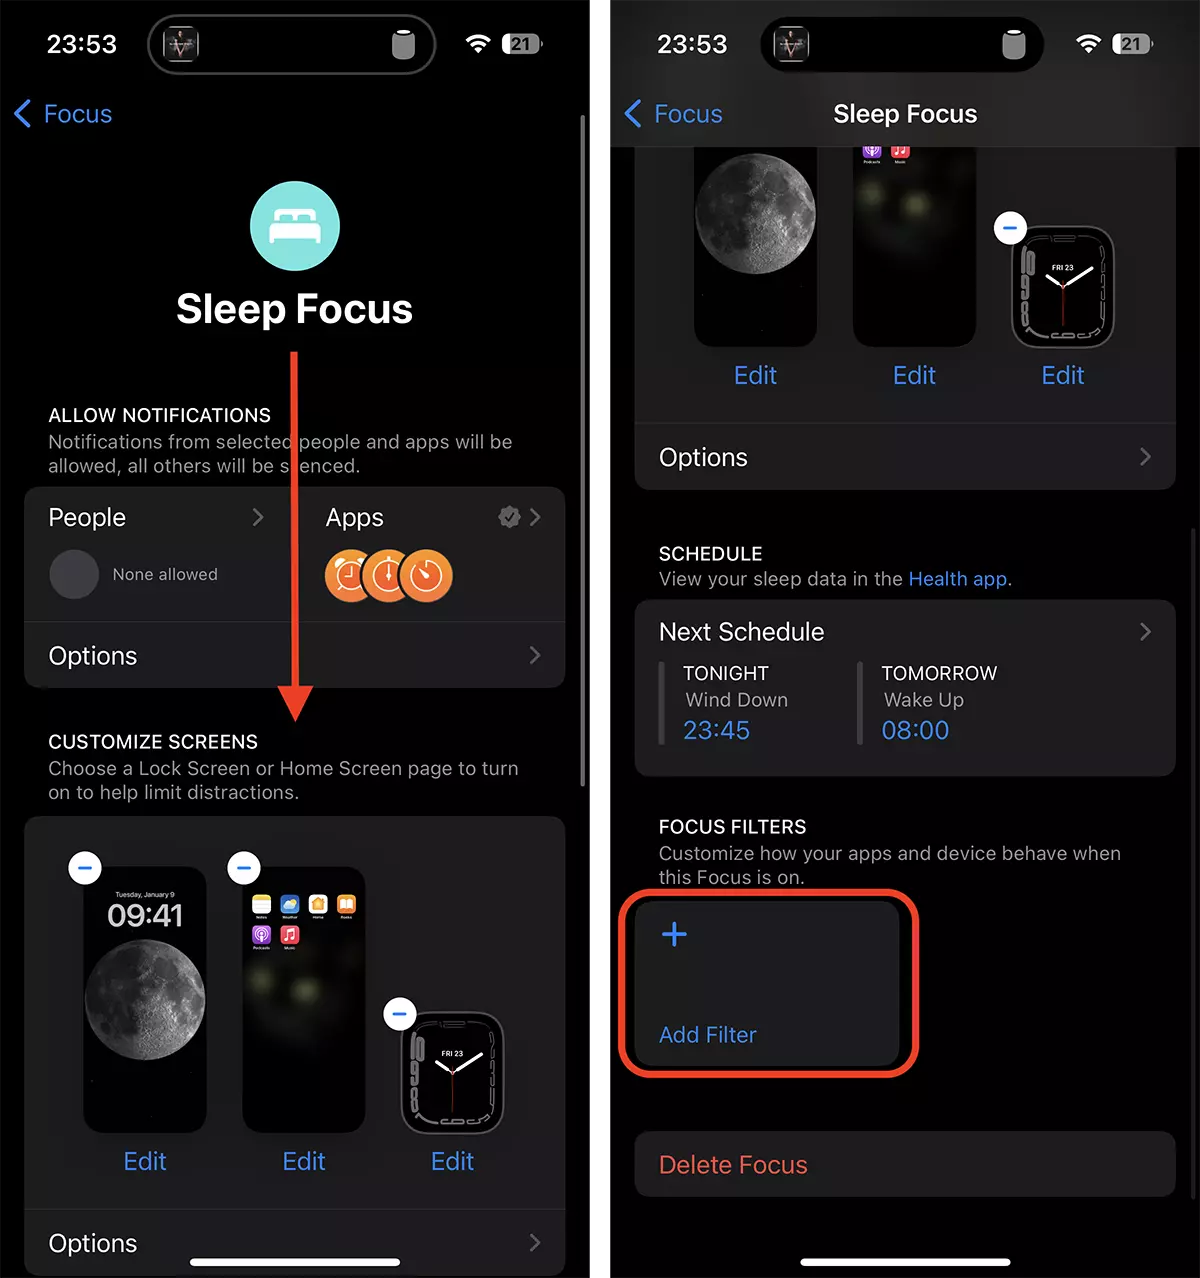 आप का स्वत: सक्रियण कैसे सेट करते हैं Low Power Mode जब iPhone है Sleep Focus